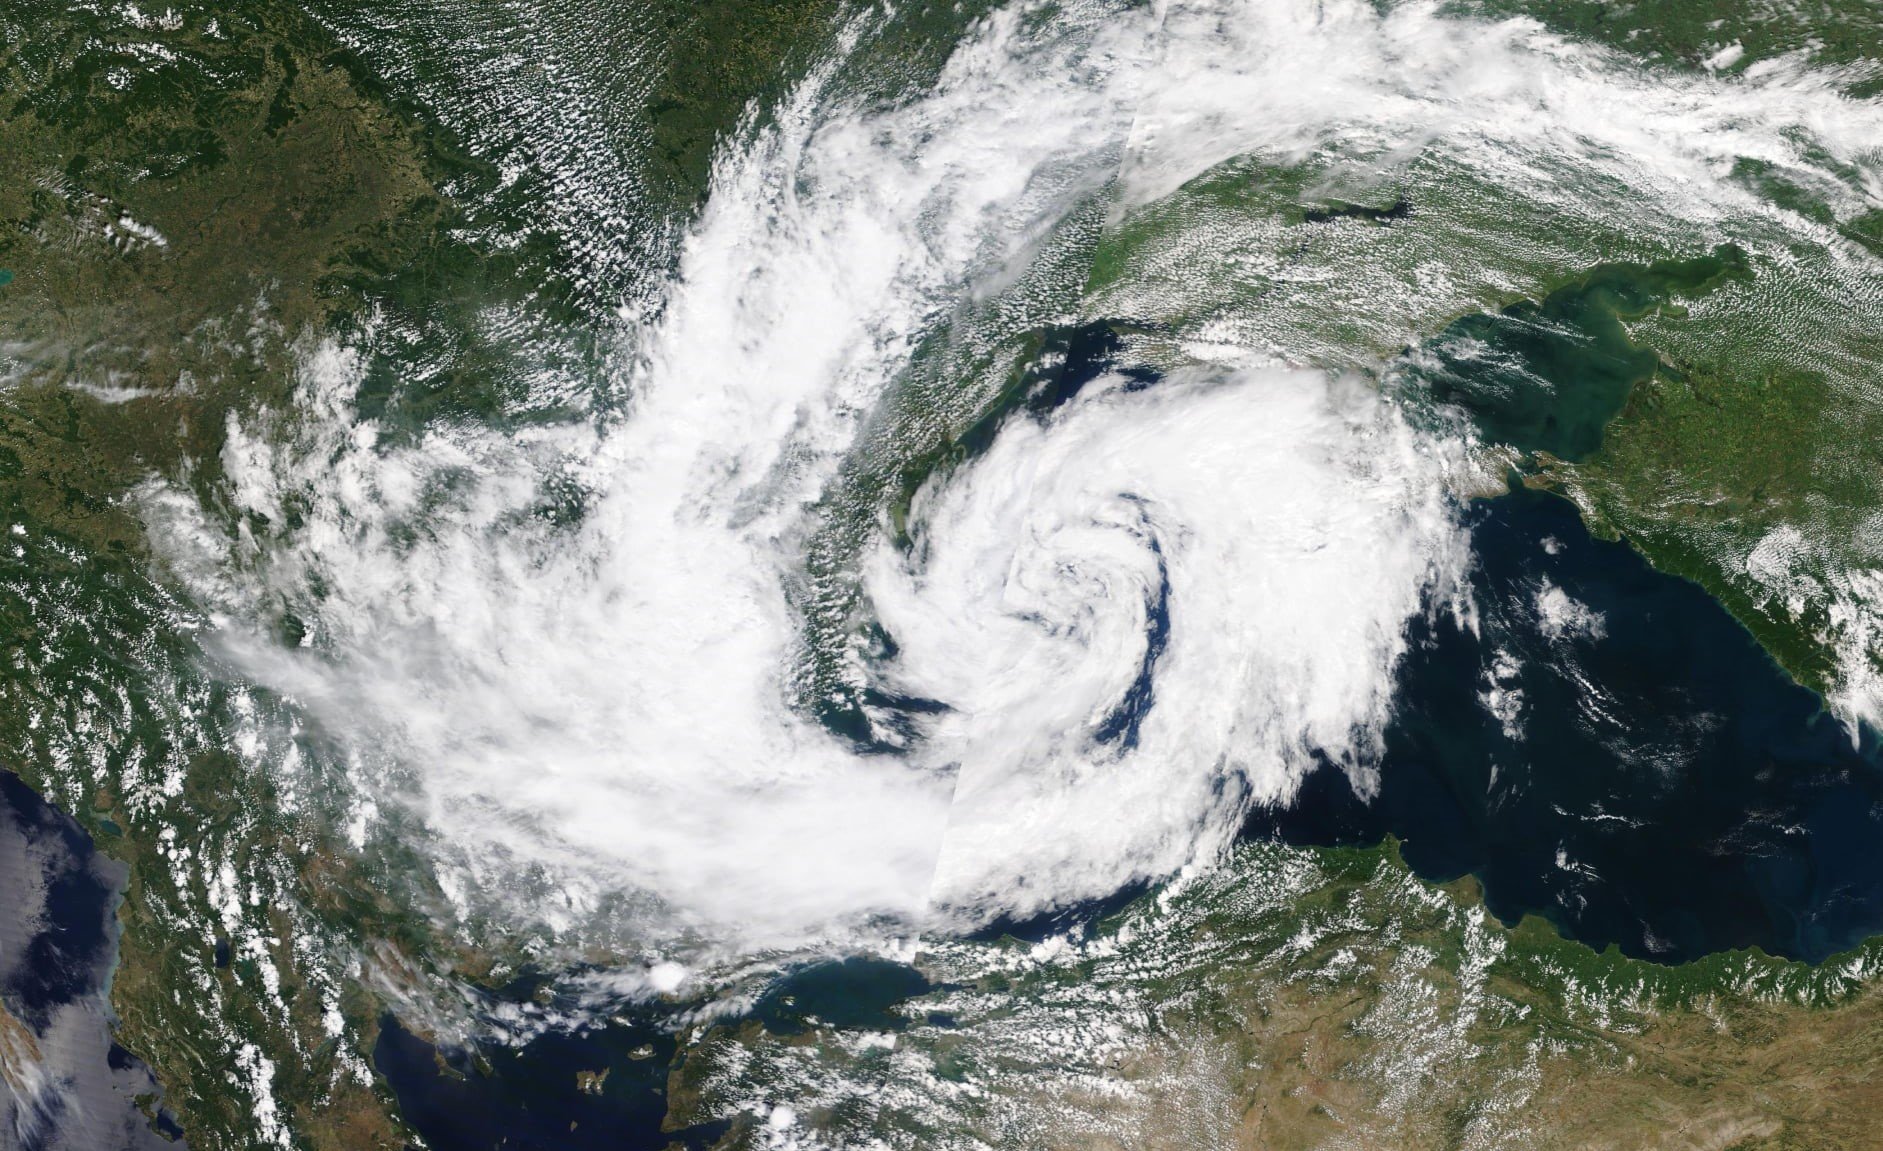  Iată ciclonul care se formează deasupra Mării Negre. Imagine din satelit